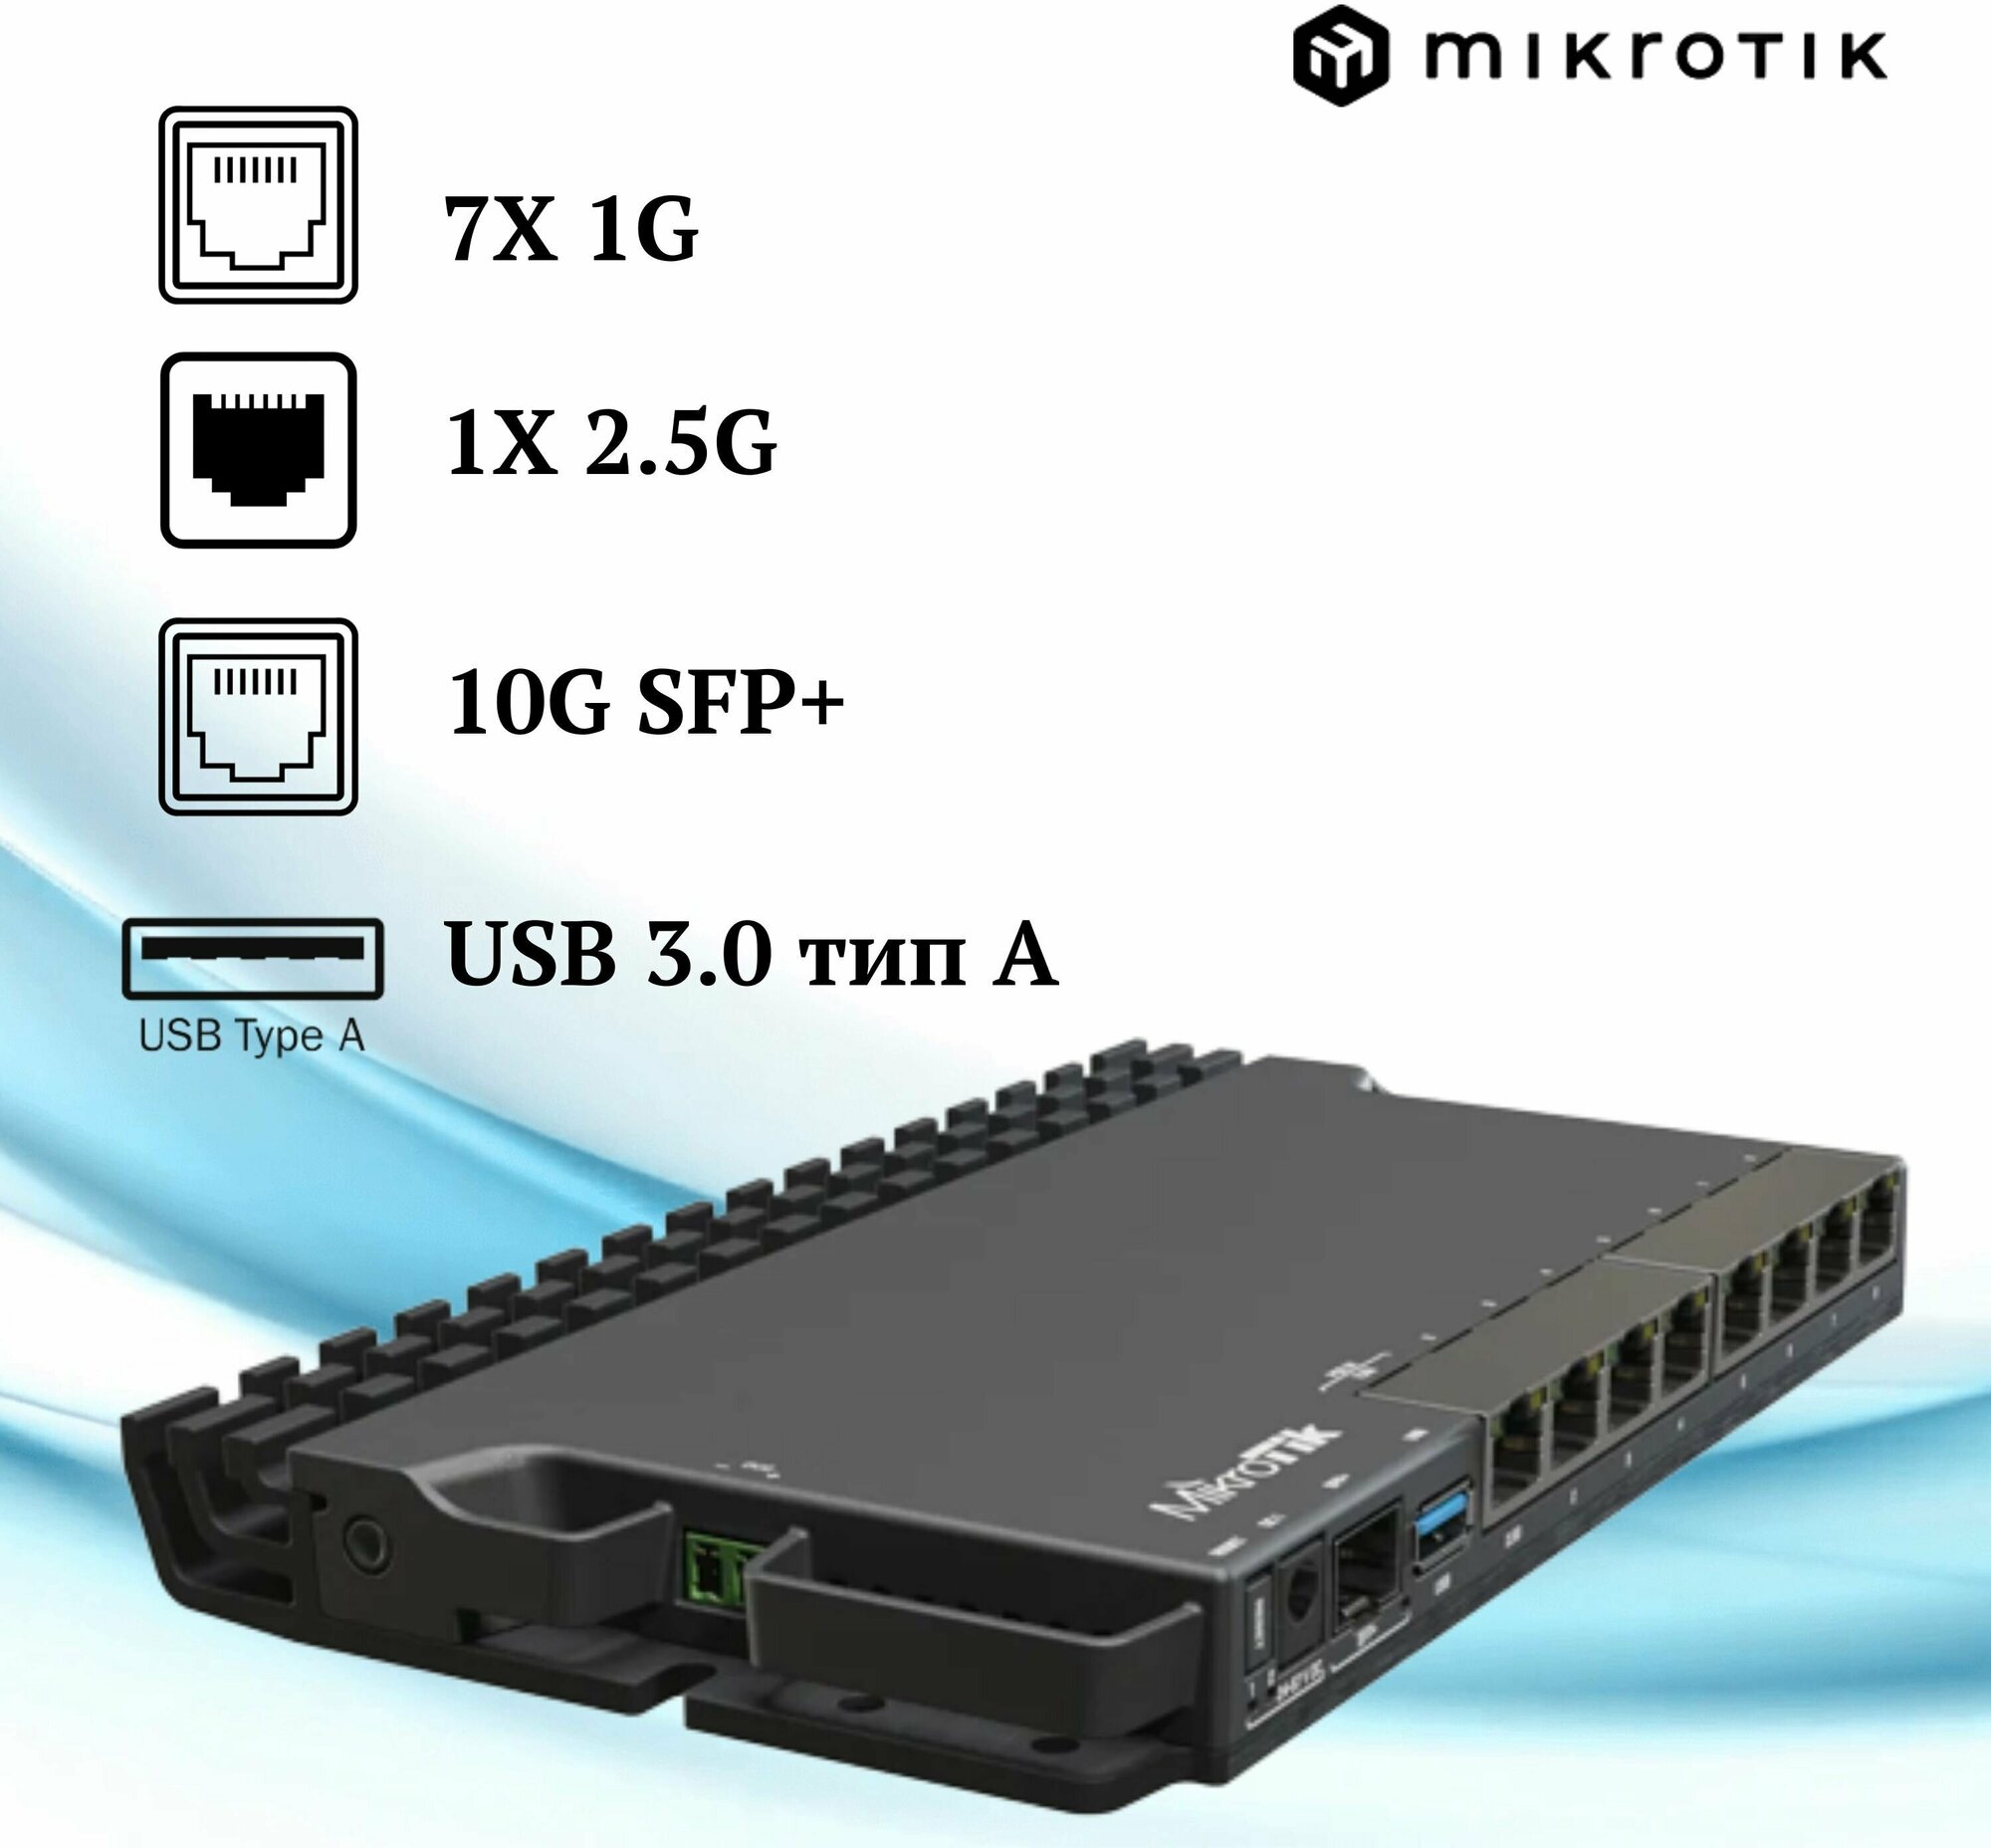 MikroTik RB5009UG+S+IN